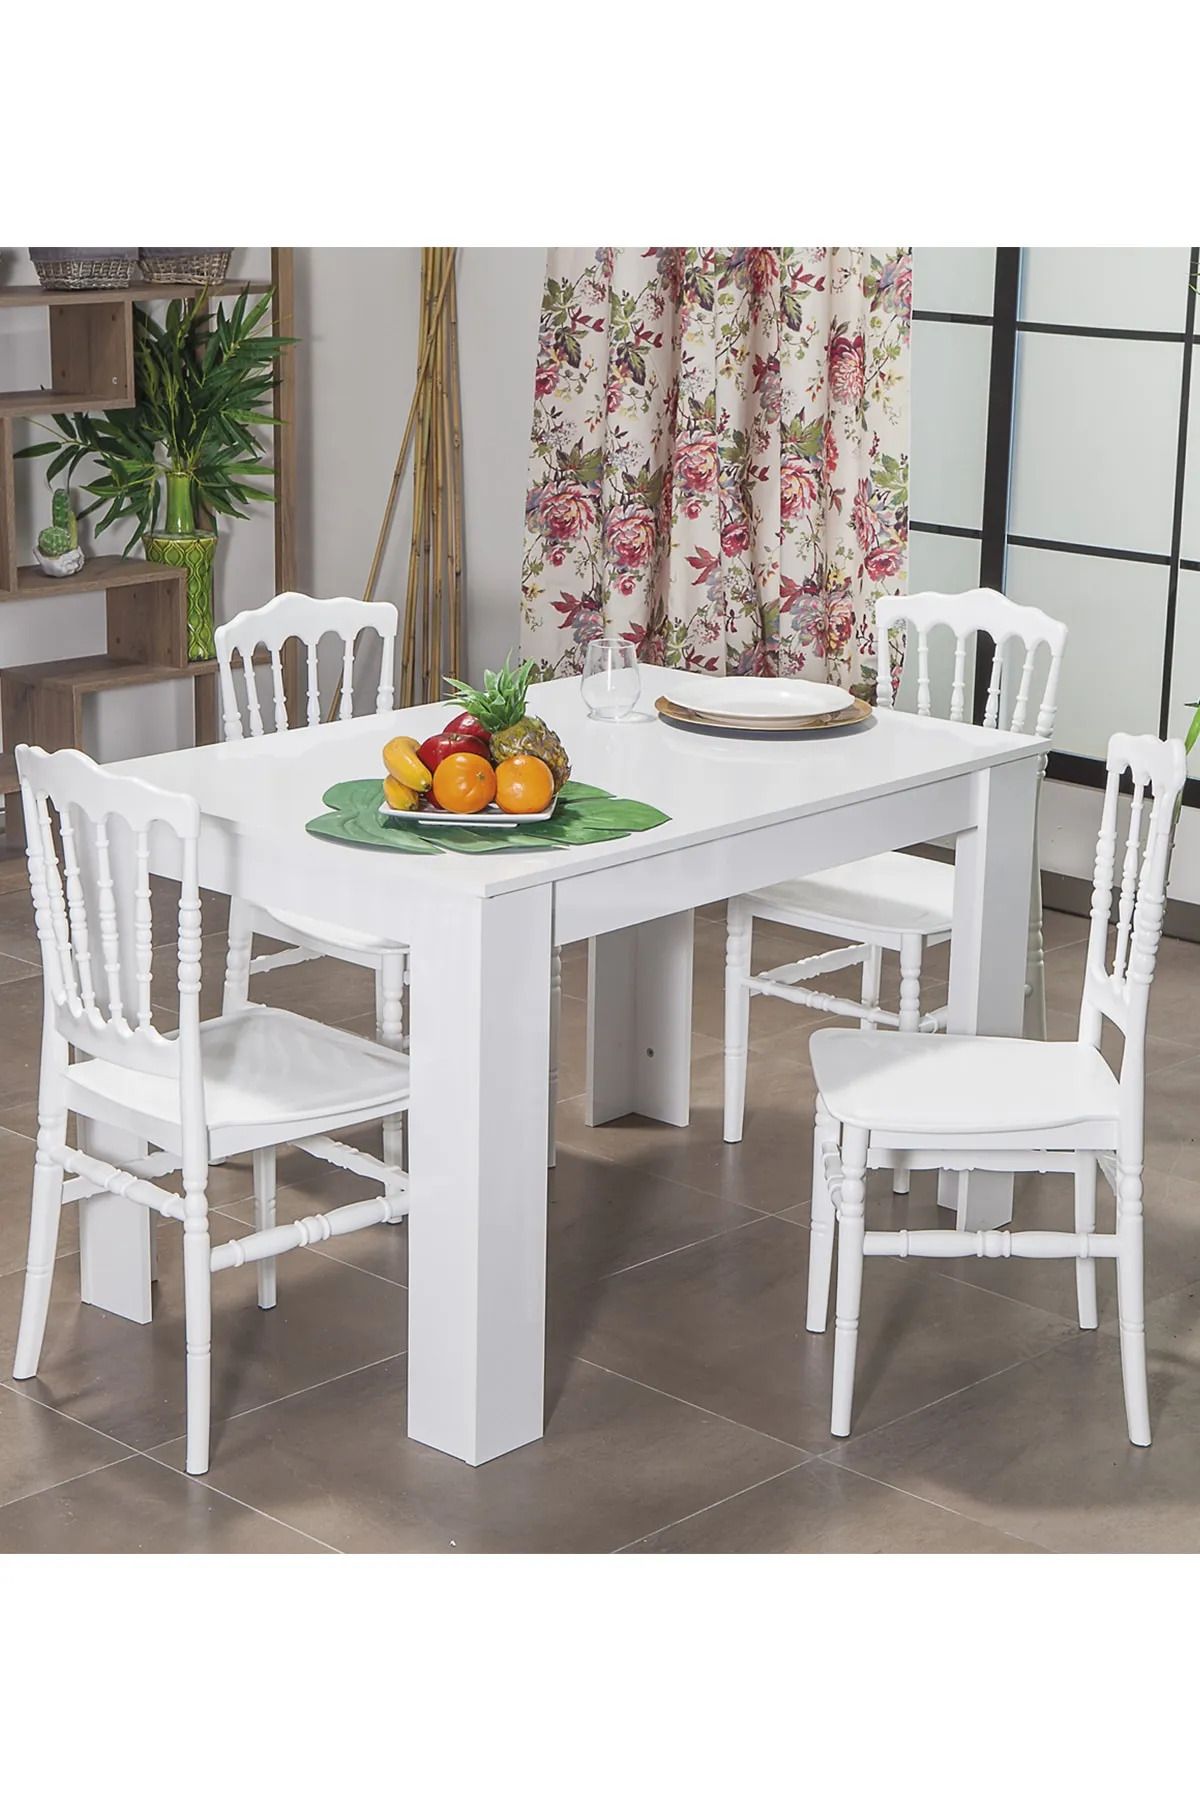 MOBETTO Arda / Miray Mutfak Masa Takımı 4 Sandalye 1 Masa - Beyaz